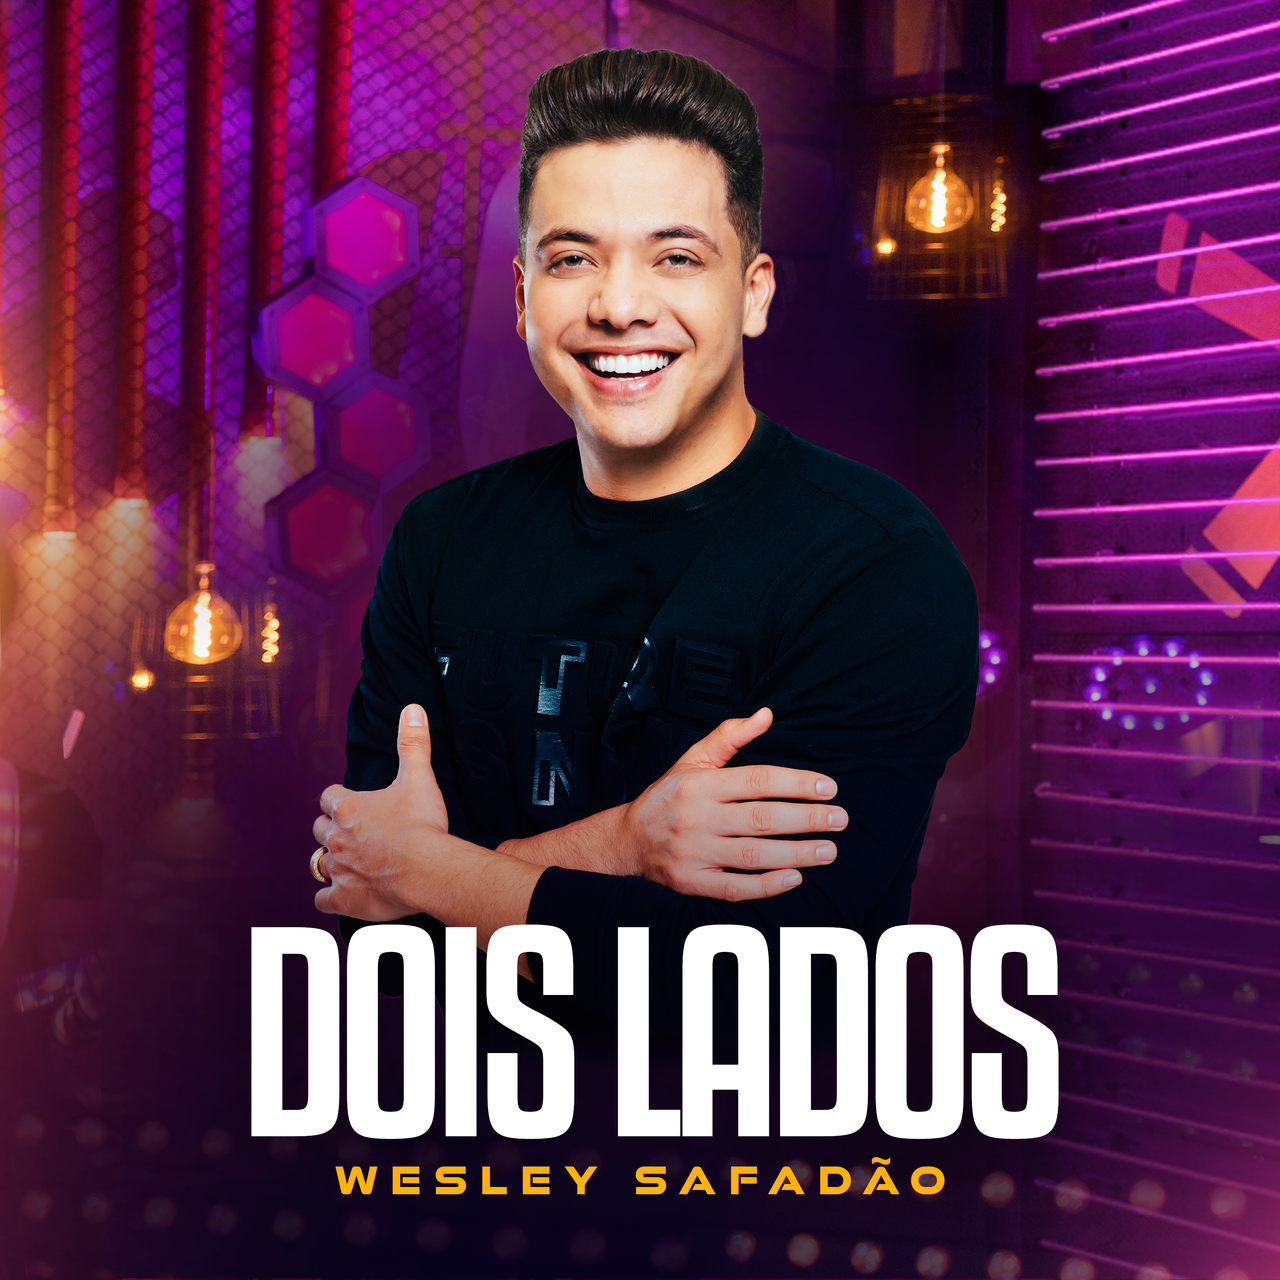 Wesley Safadão lança “Dois Lados” e grava DVD no Rio de Janeiro este mês 41